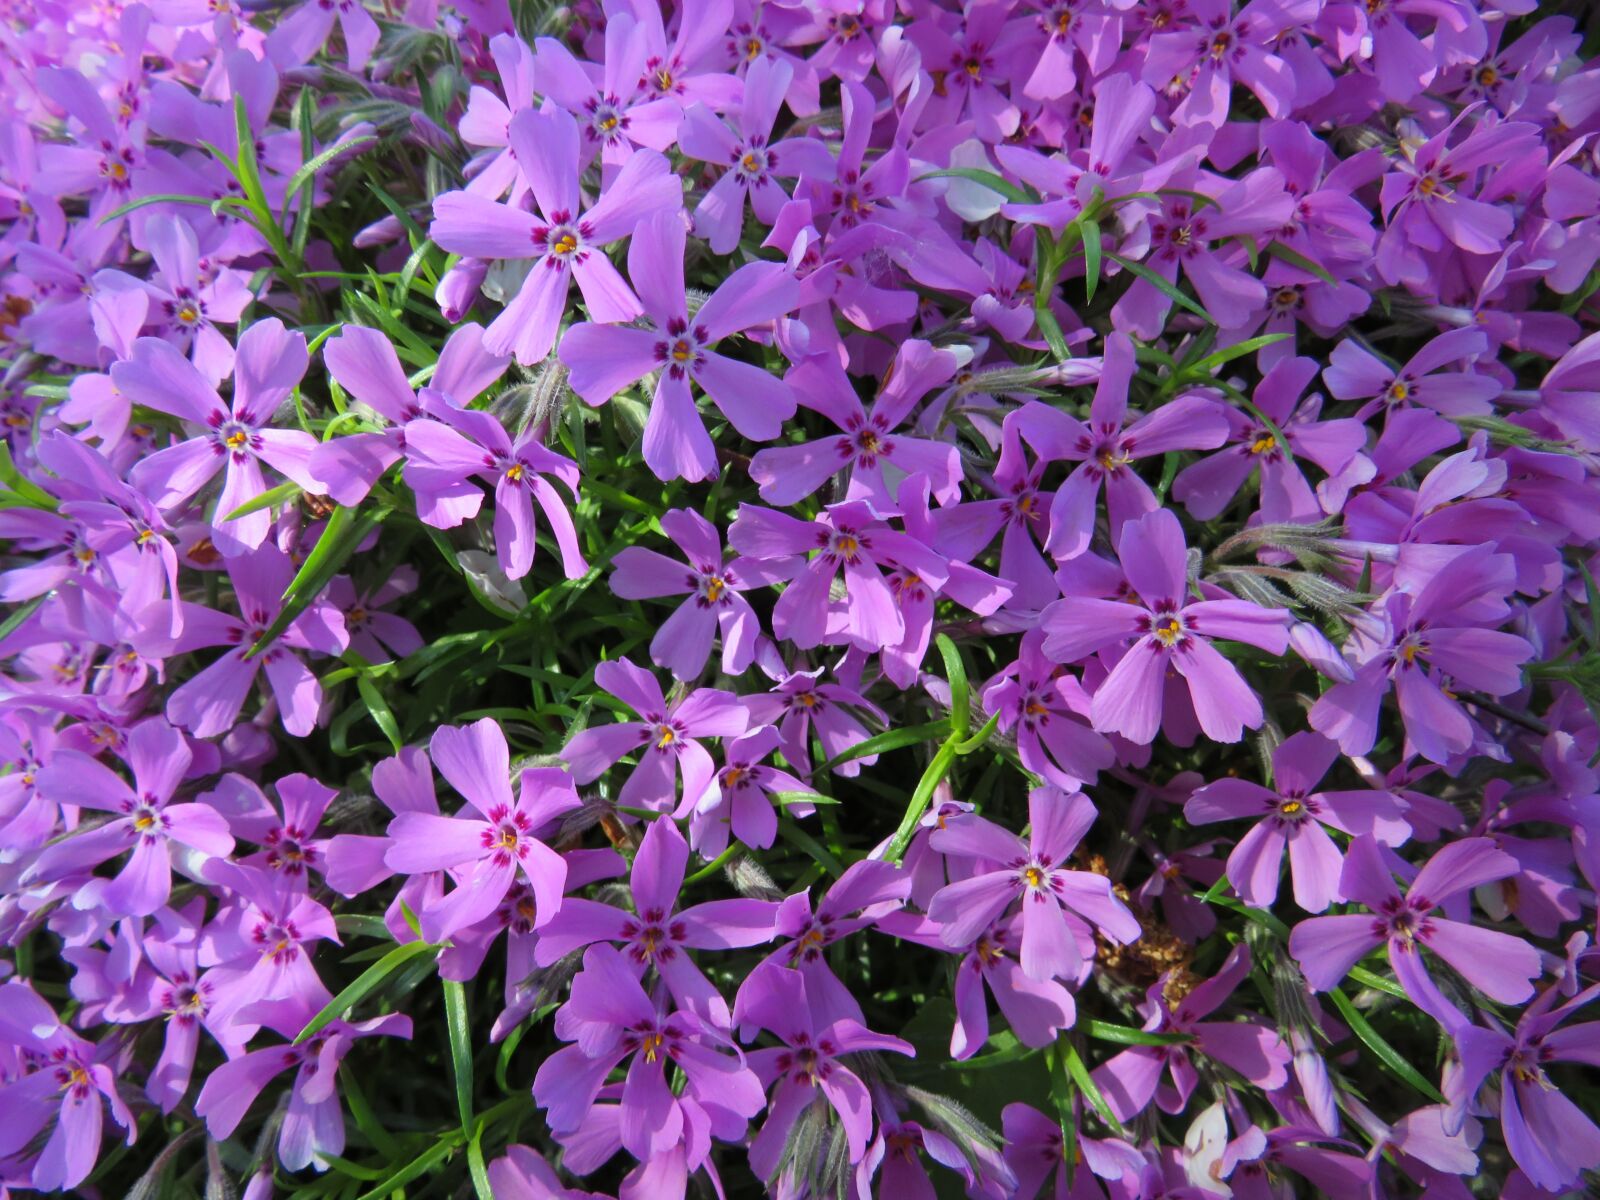 Canon PowerShot SX540 HS sample photo. Flowers, violet, plants photography